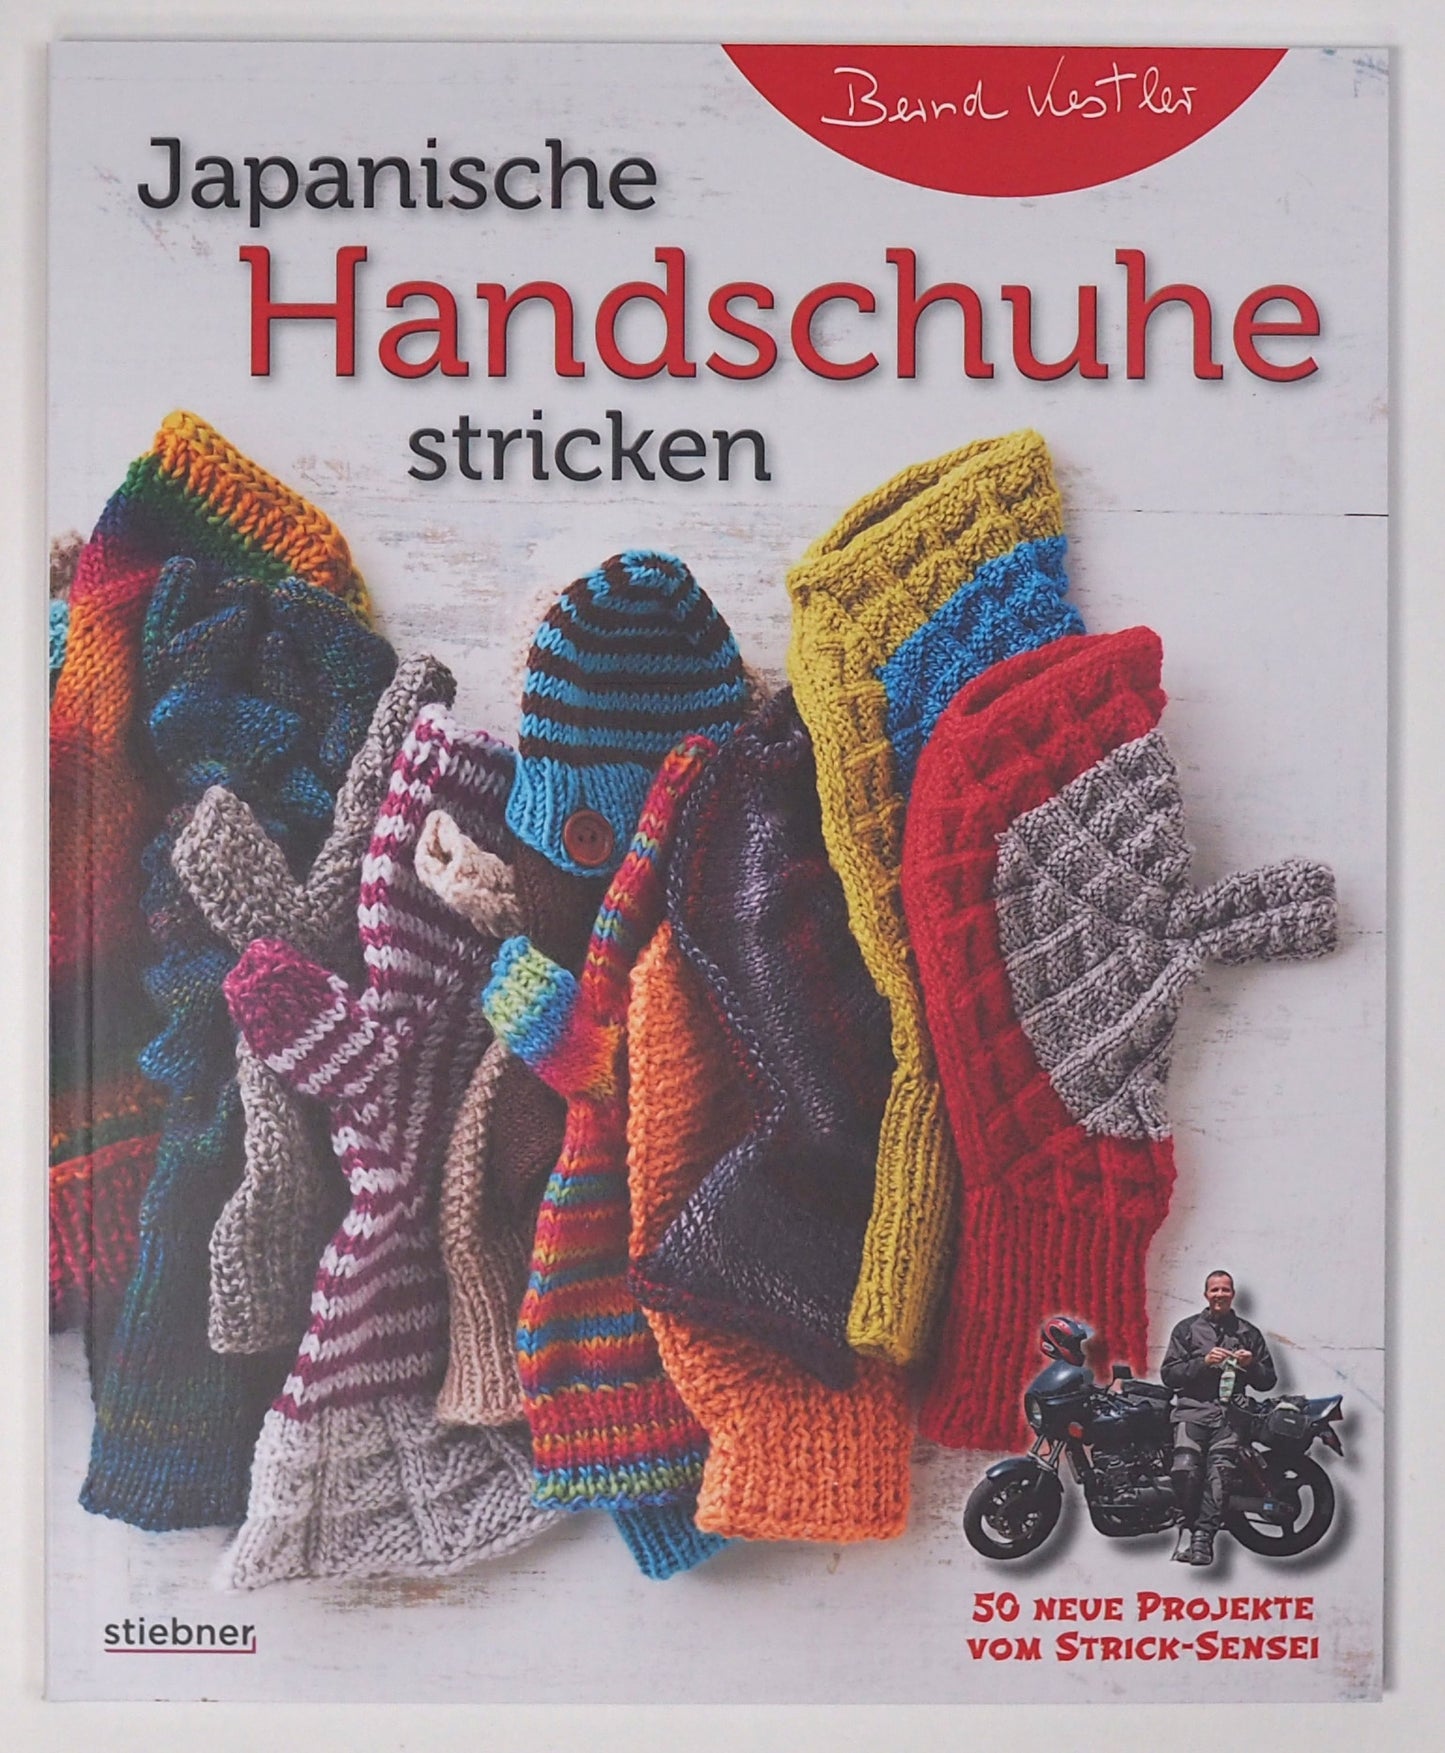 Japanische Handschuhe stricken von Bernd Kestler 